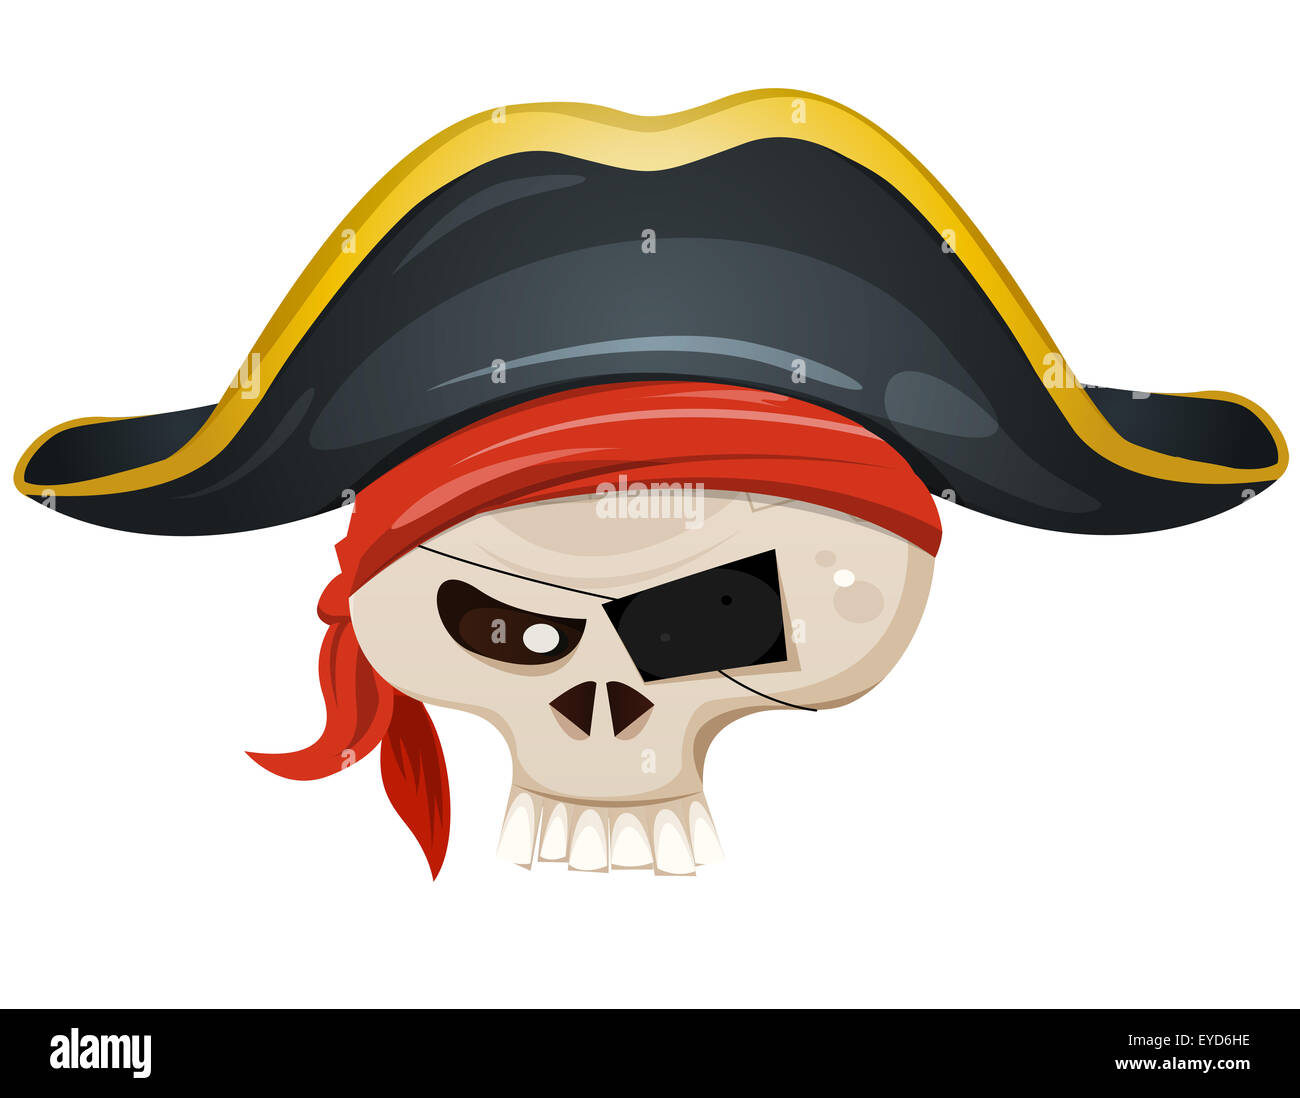 Beispiel für einen Piraten Schädel Kopf Zeichentrickfigur, mit Kopftuch und Corsair Hut Stockfoto